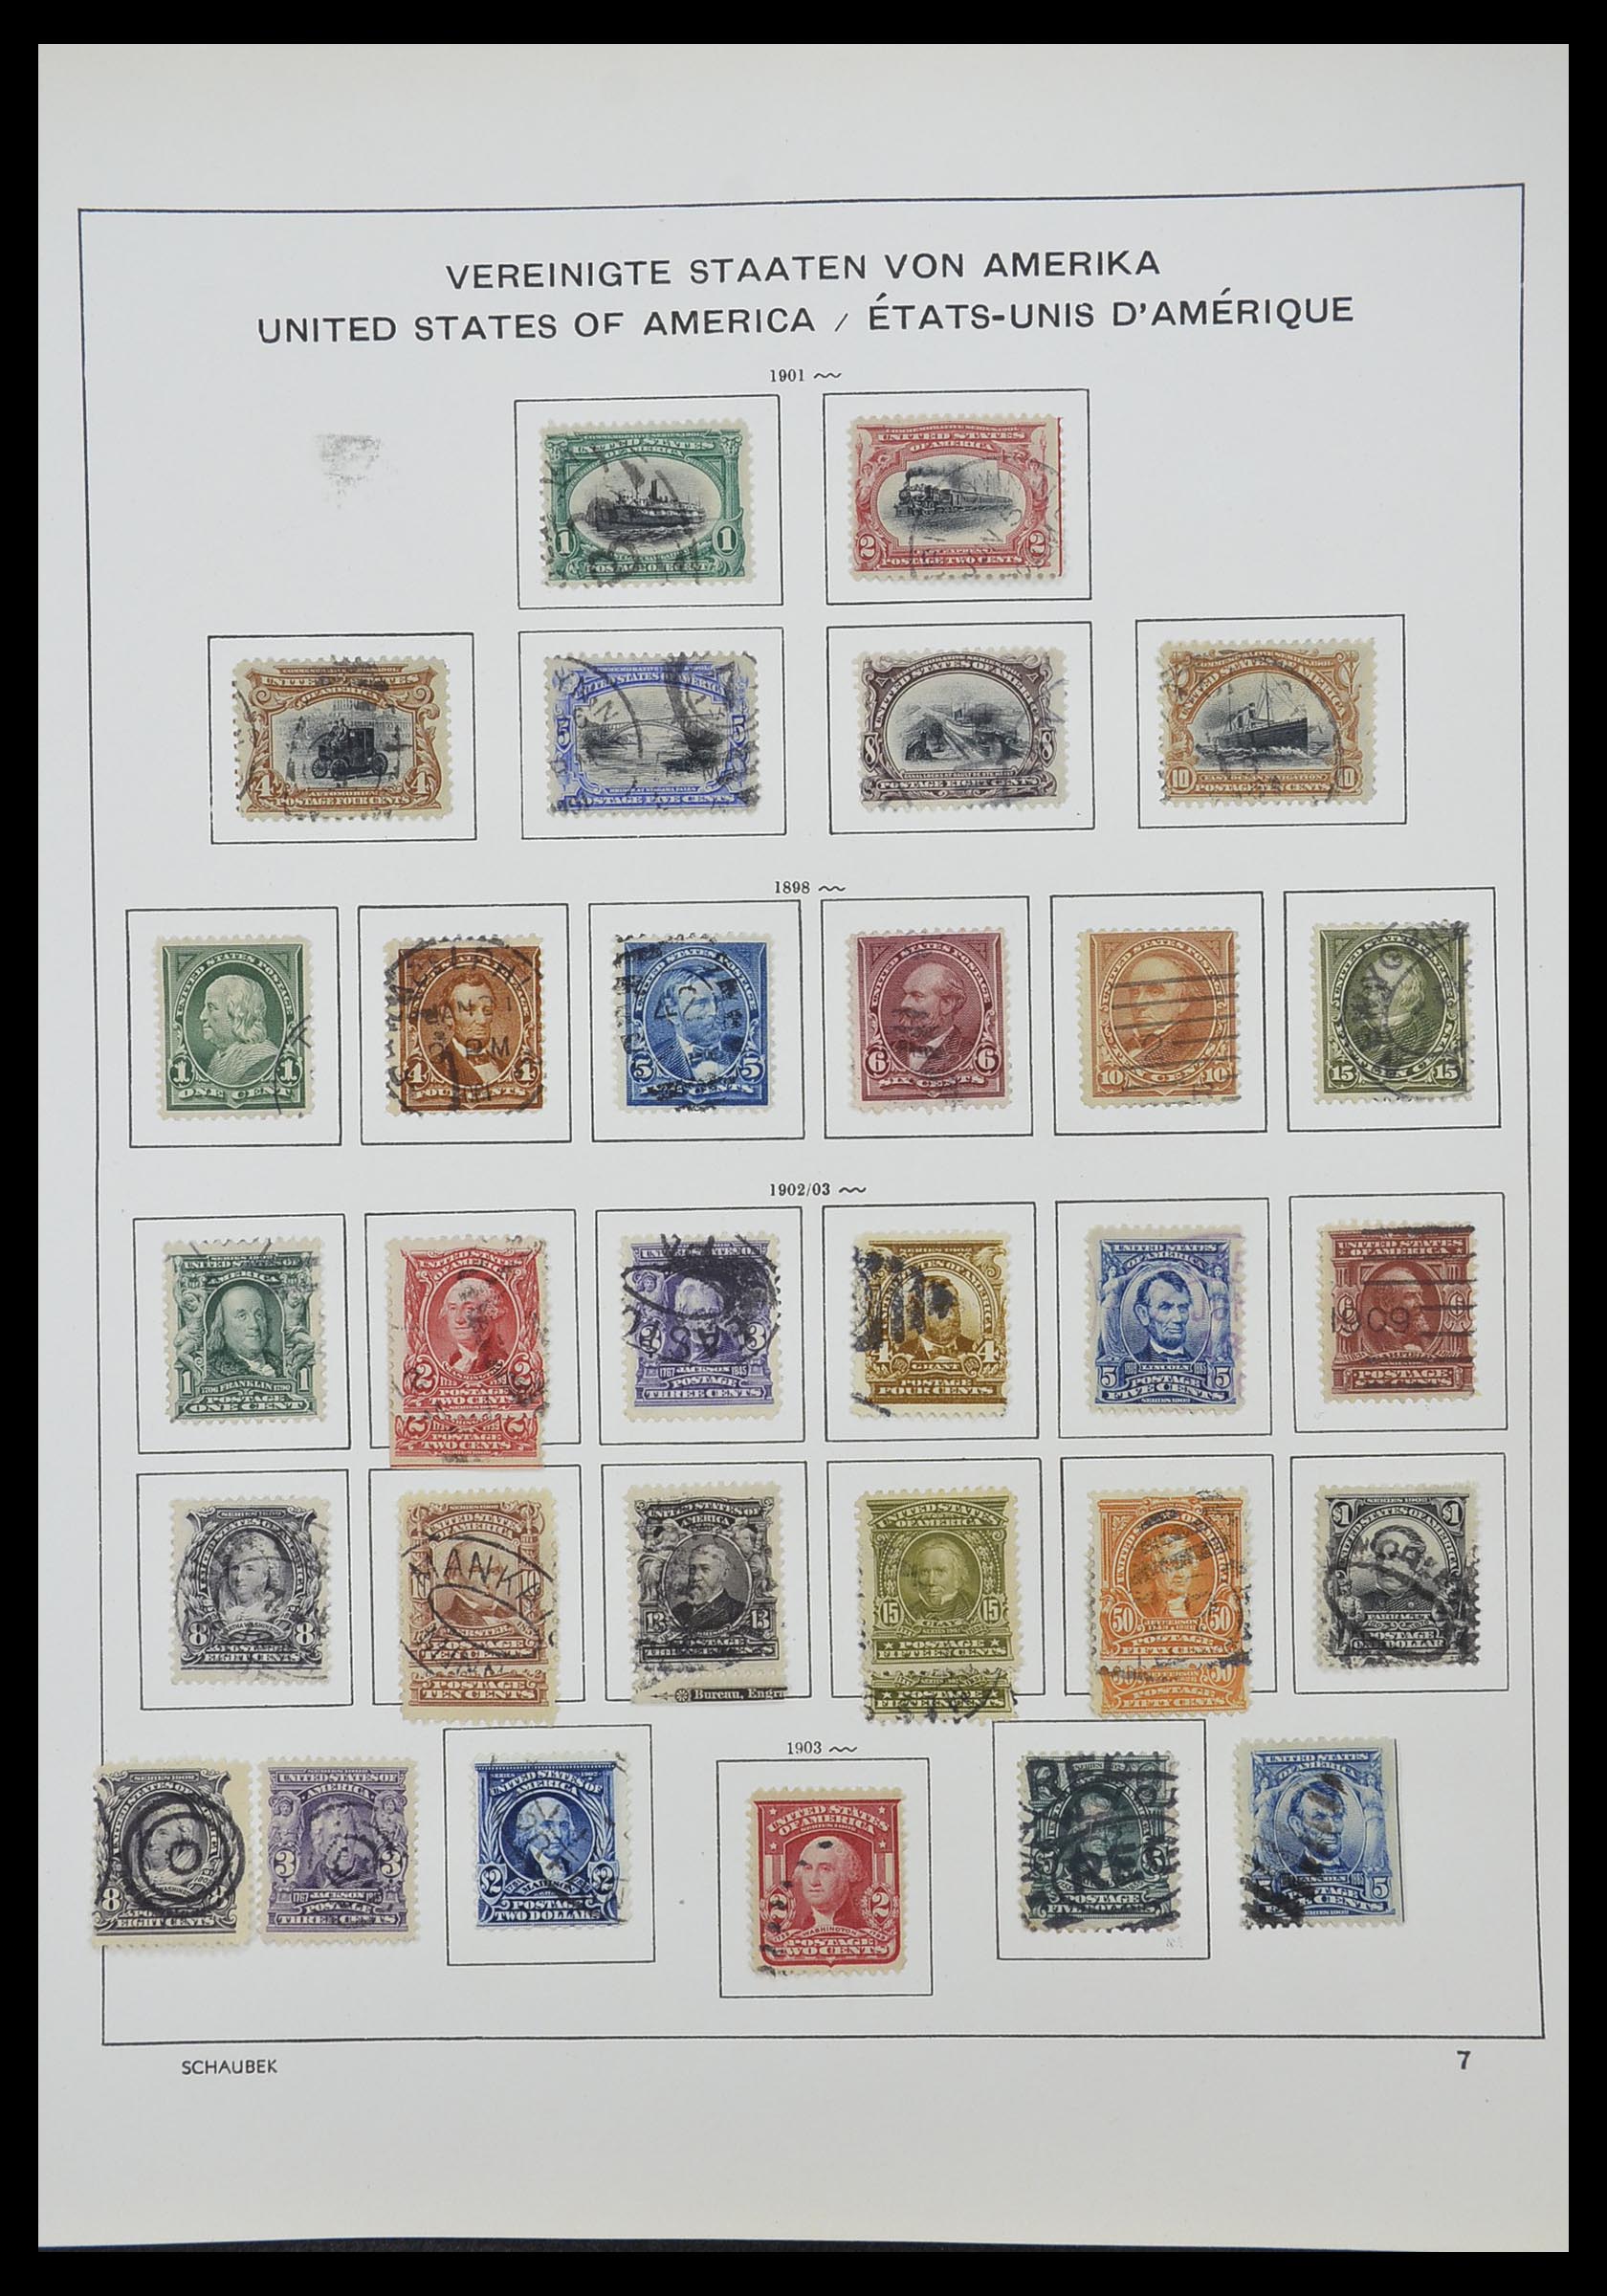 33211 018 - Stamp collection 33211 USA 1847-2010.